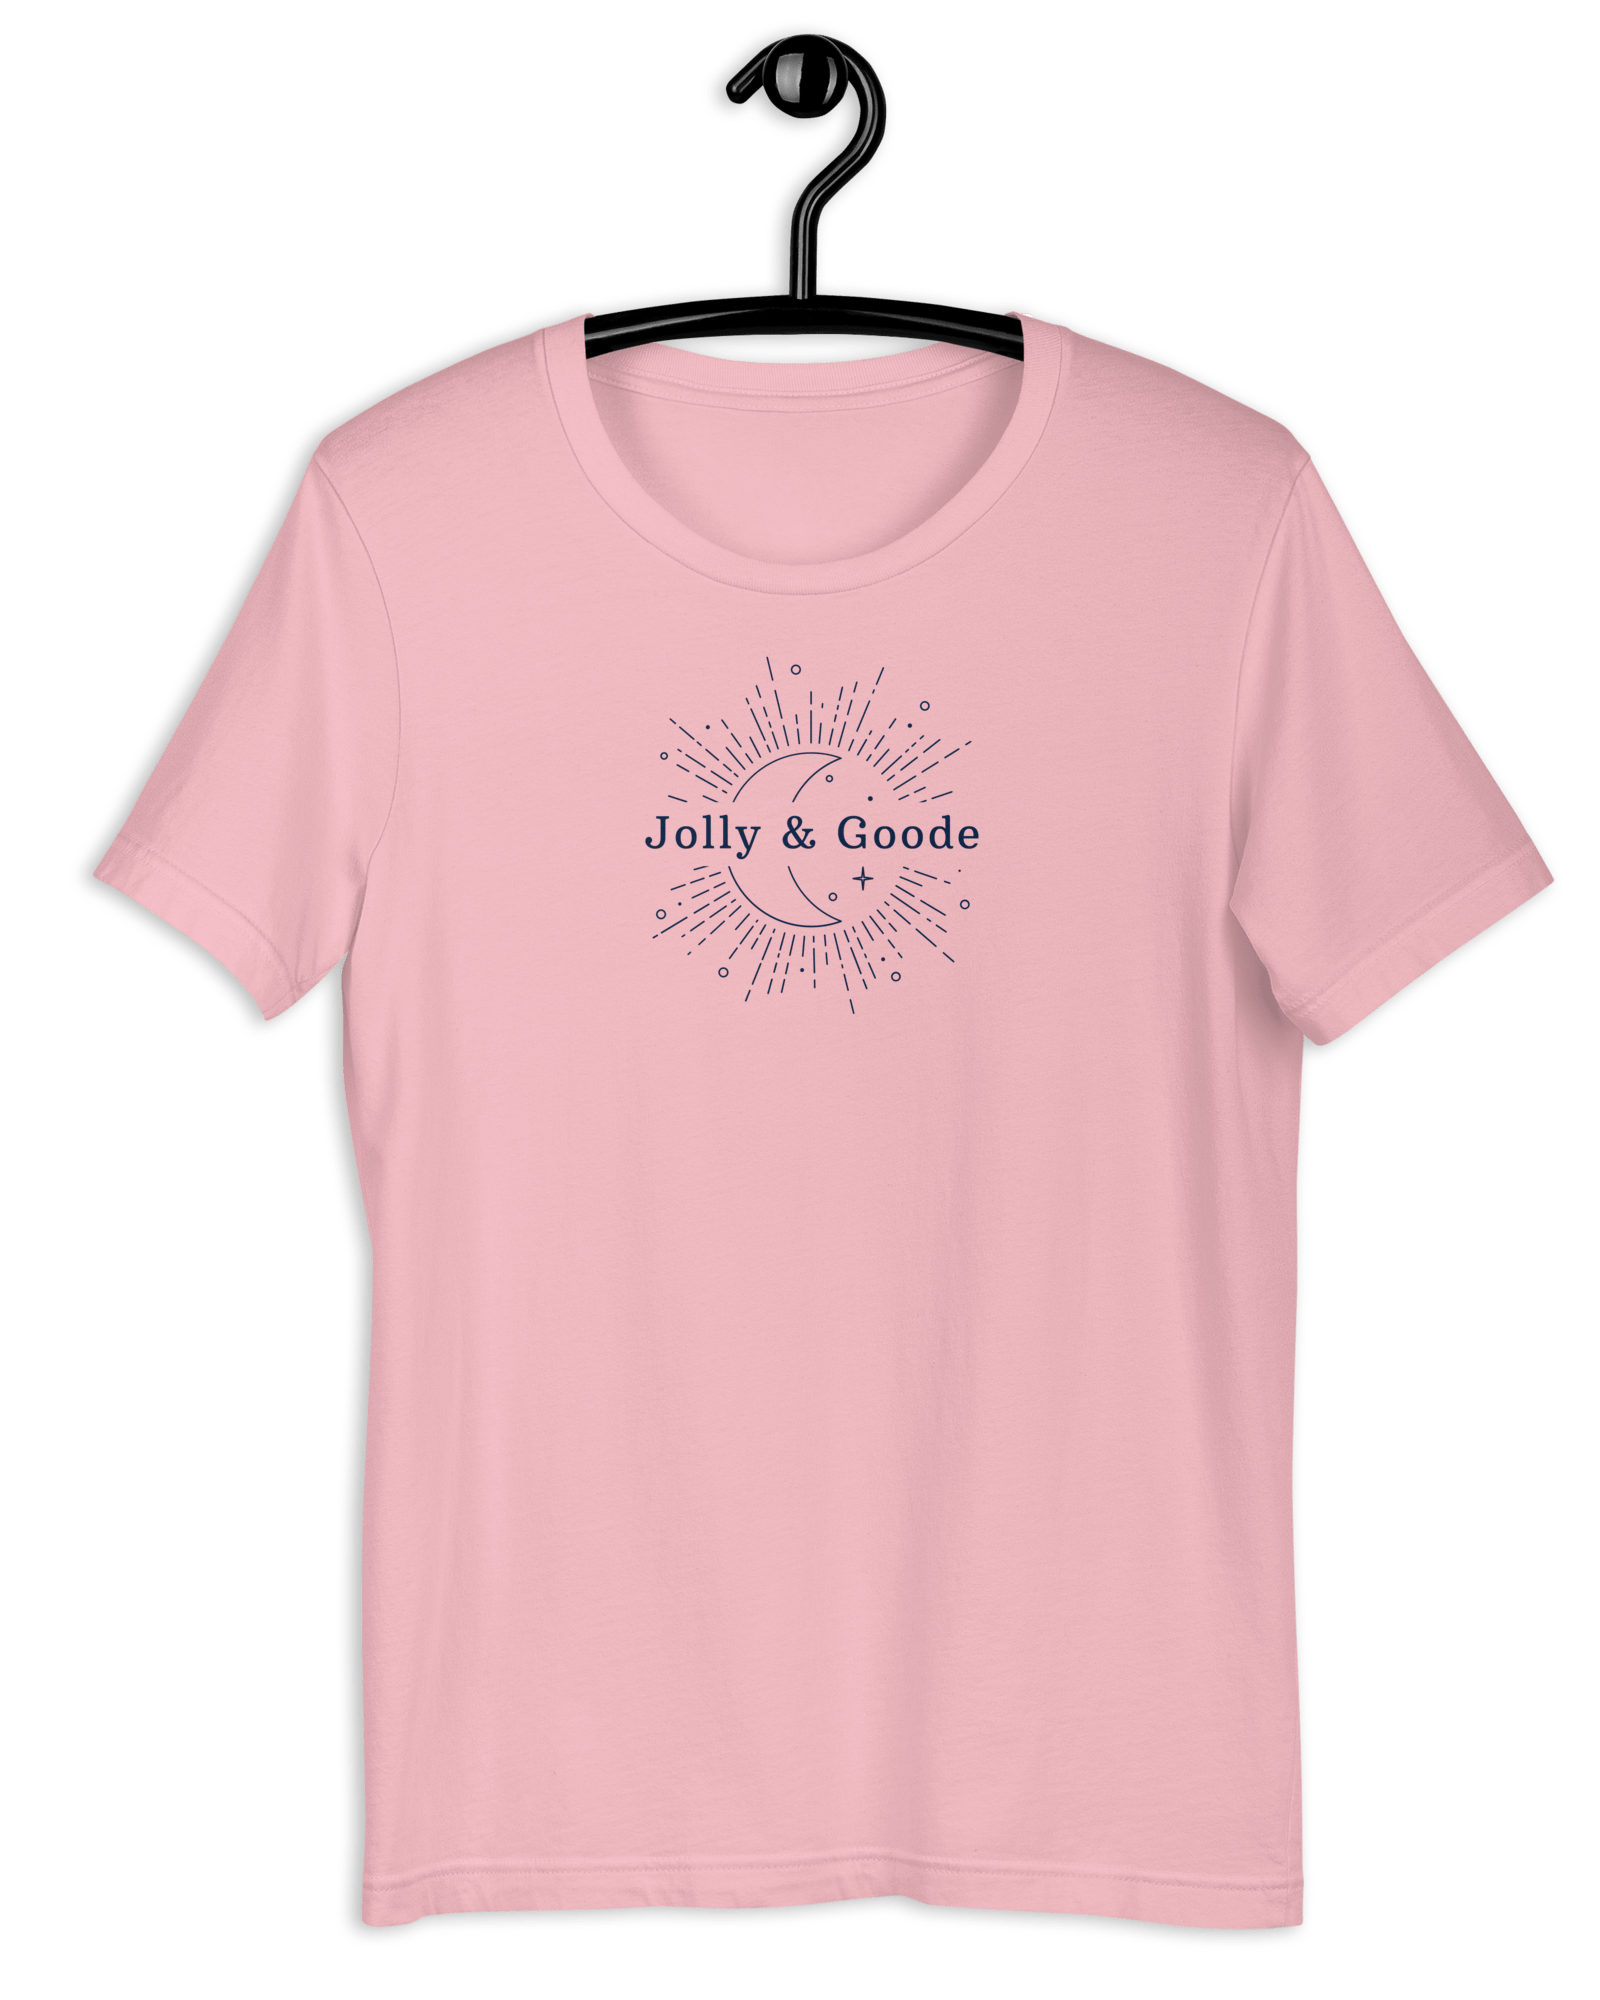 Jolly & Goode Eclipse T-Shirt Pink / S Shirts & Tops Jolly & Goode